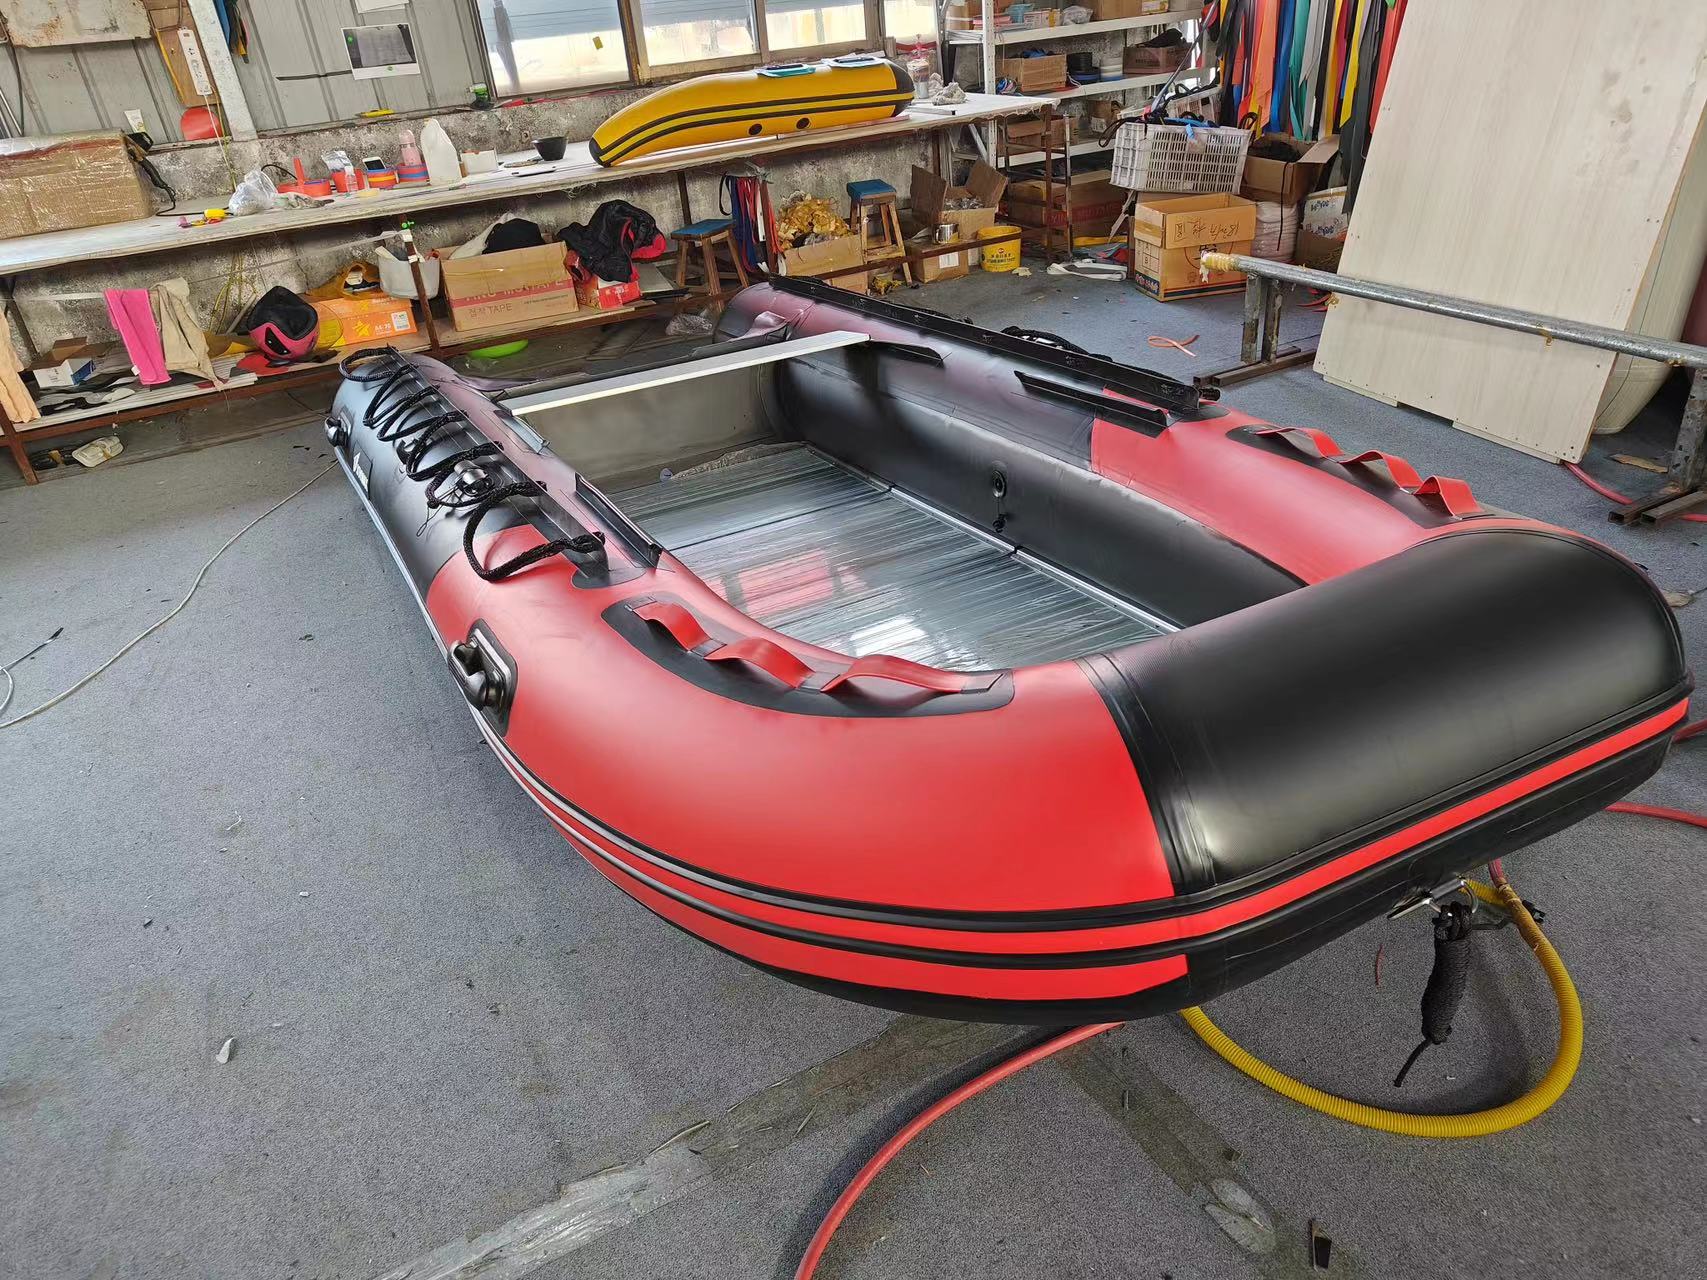  12 Fuß Aluminium-Schlauchboot mit abgerundetem Heck